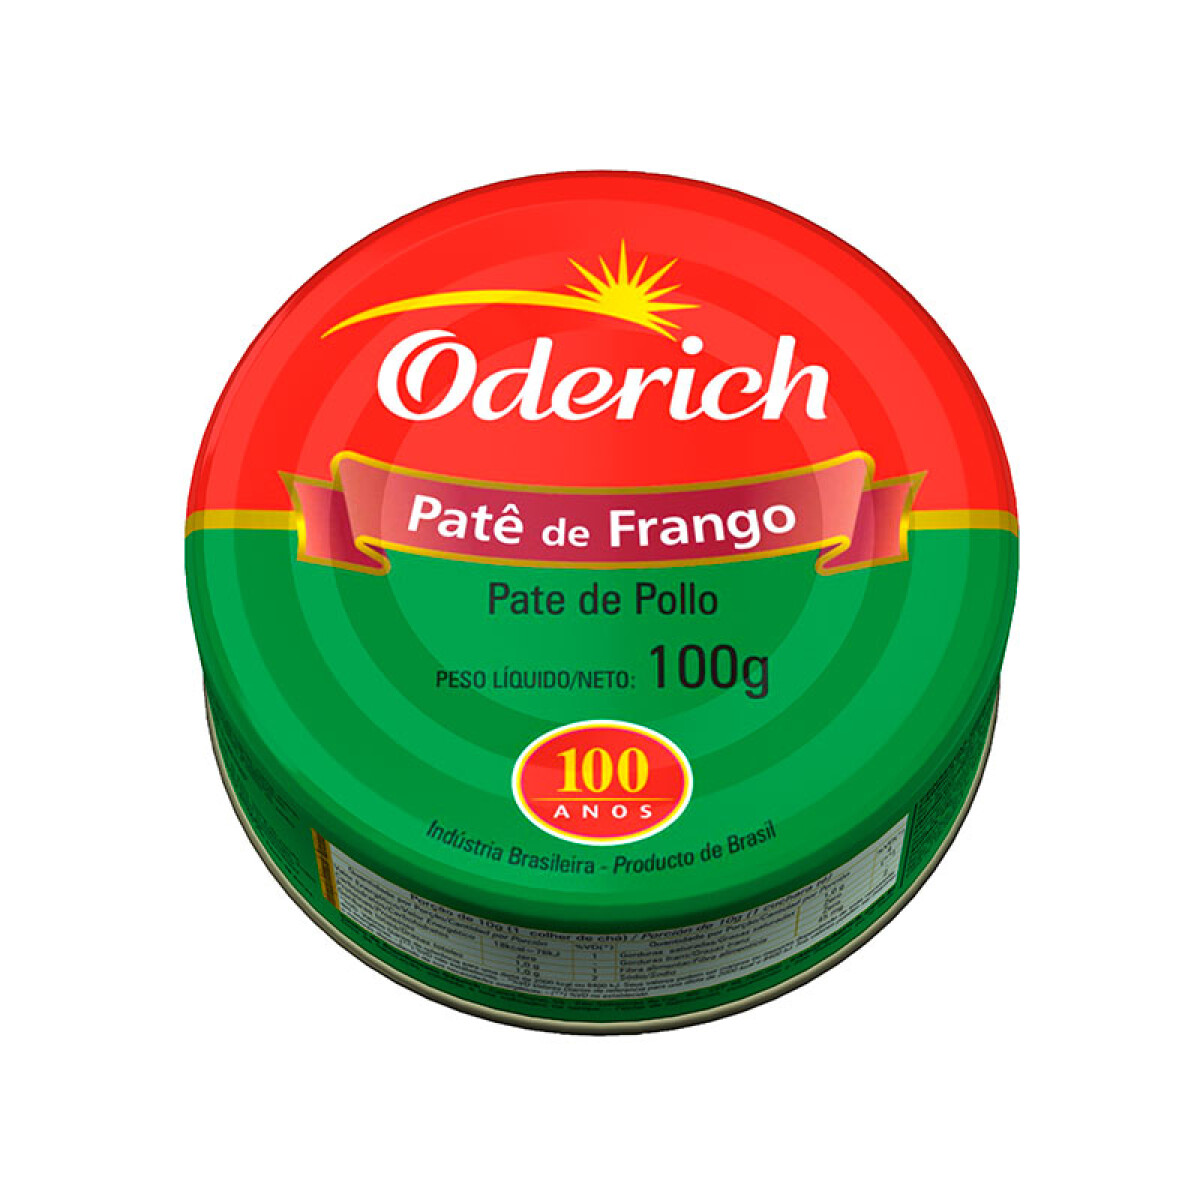 Paté ODERICH 100g - Pollo 